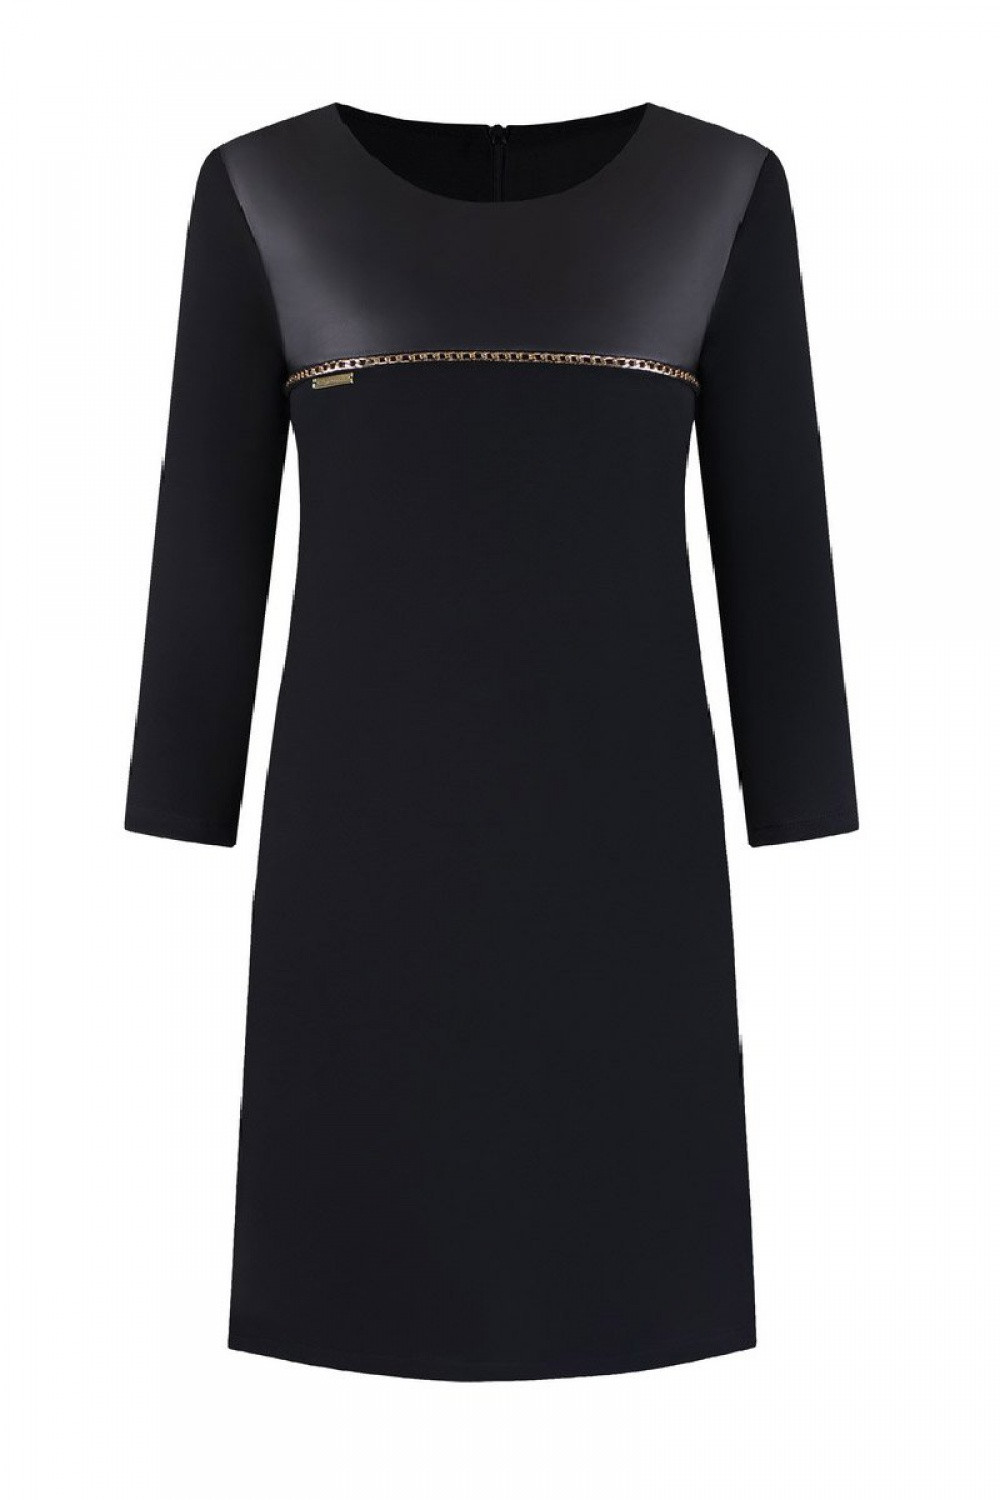 Společenské šaty model 108526 Riana - Jersa černá 52